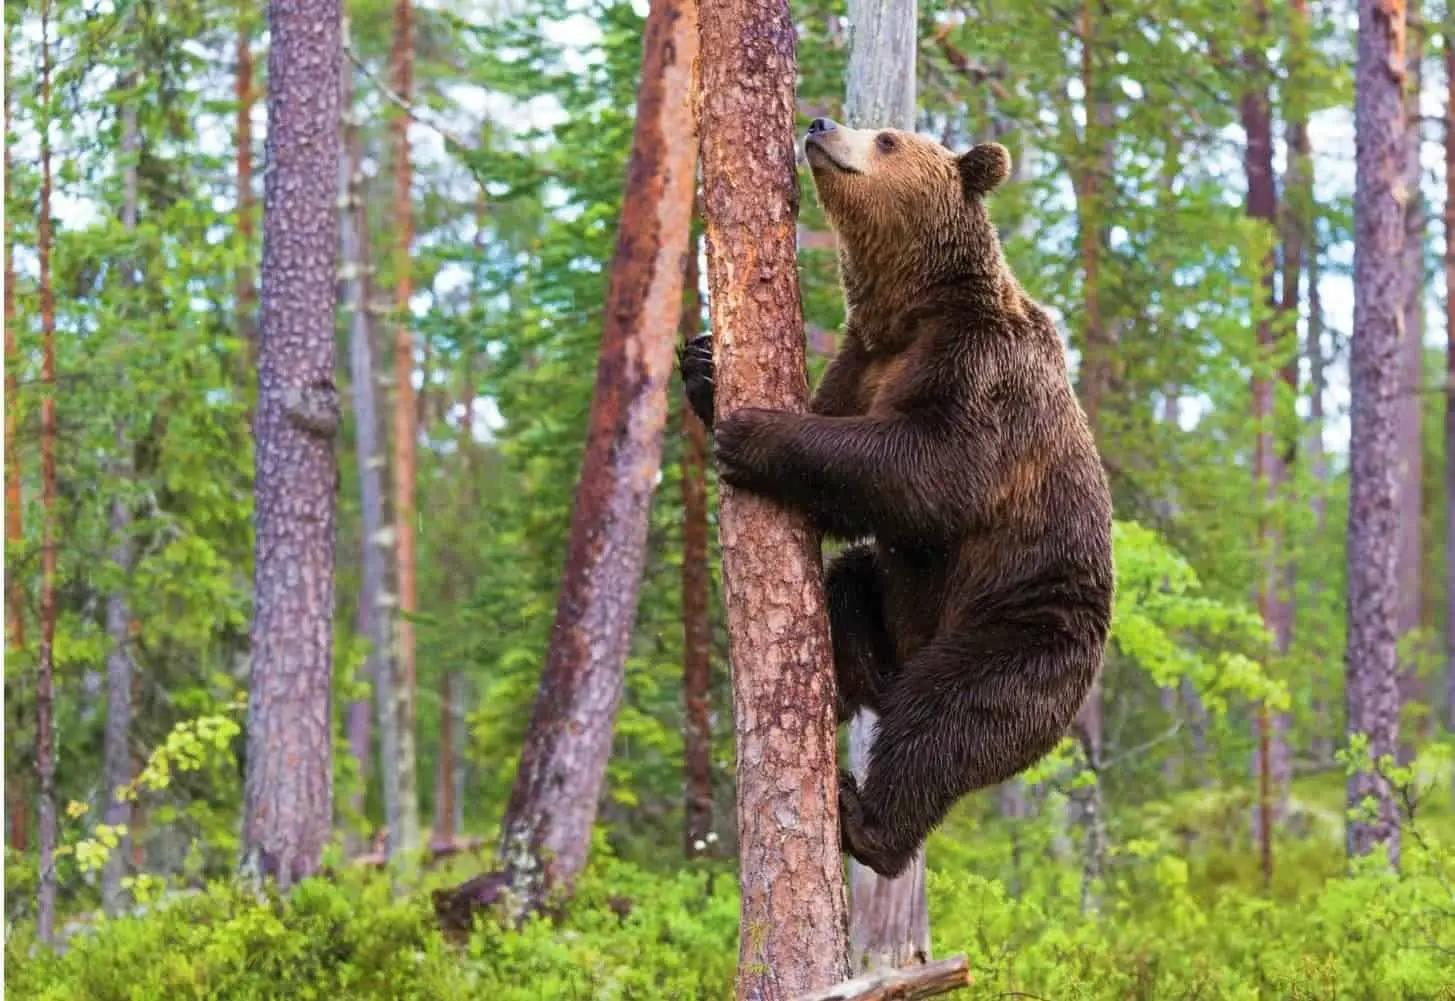 50 Feet up! Can Bears Climb Trees? How High?